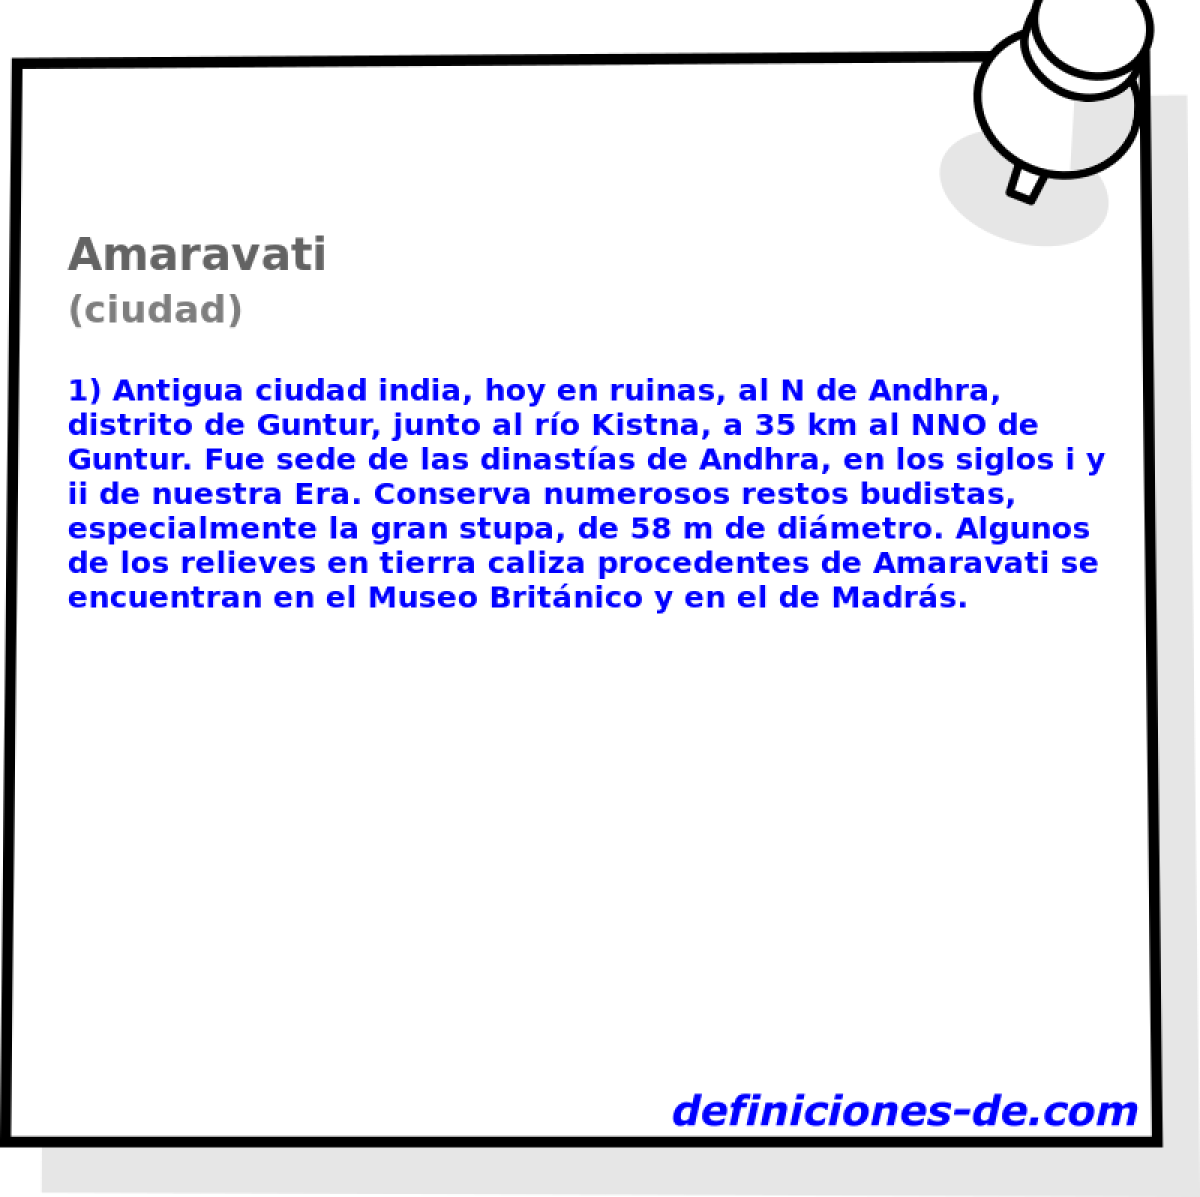 Amaravati (ciudad)